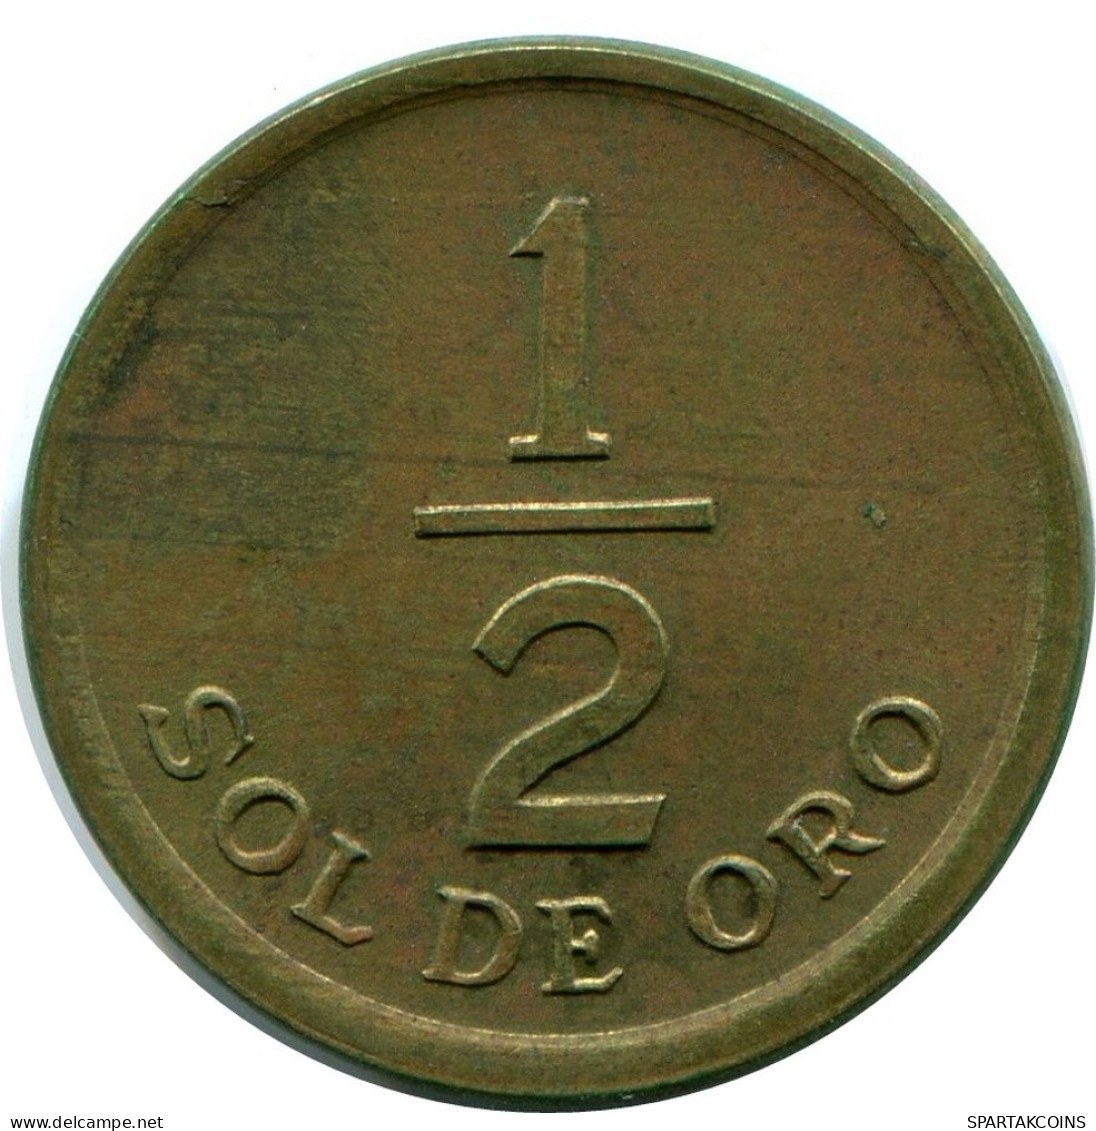 1/2 SOL 1975 PERU Coin #AZ075.U.A - Peru